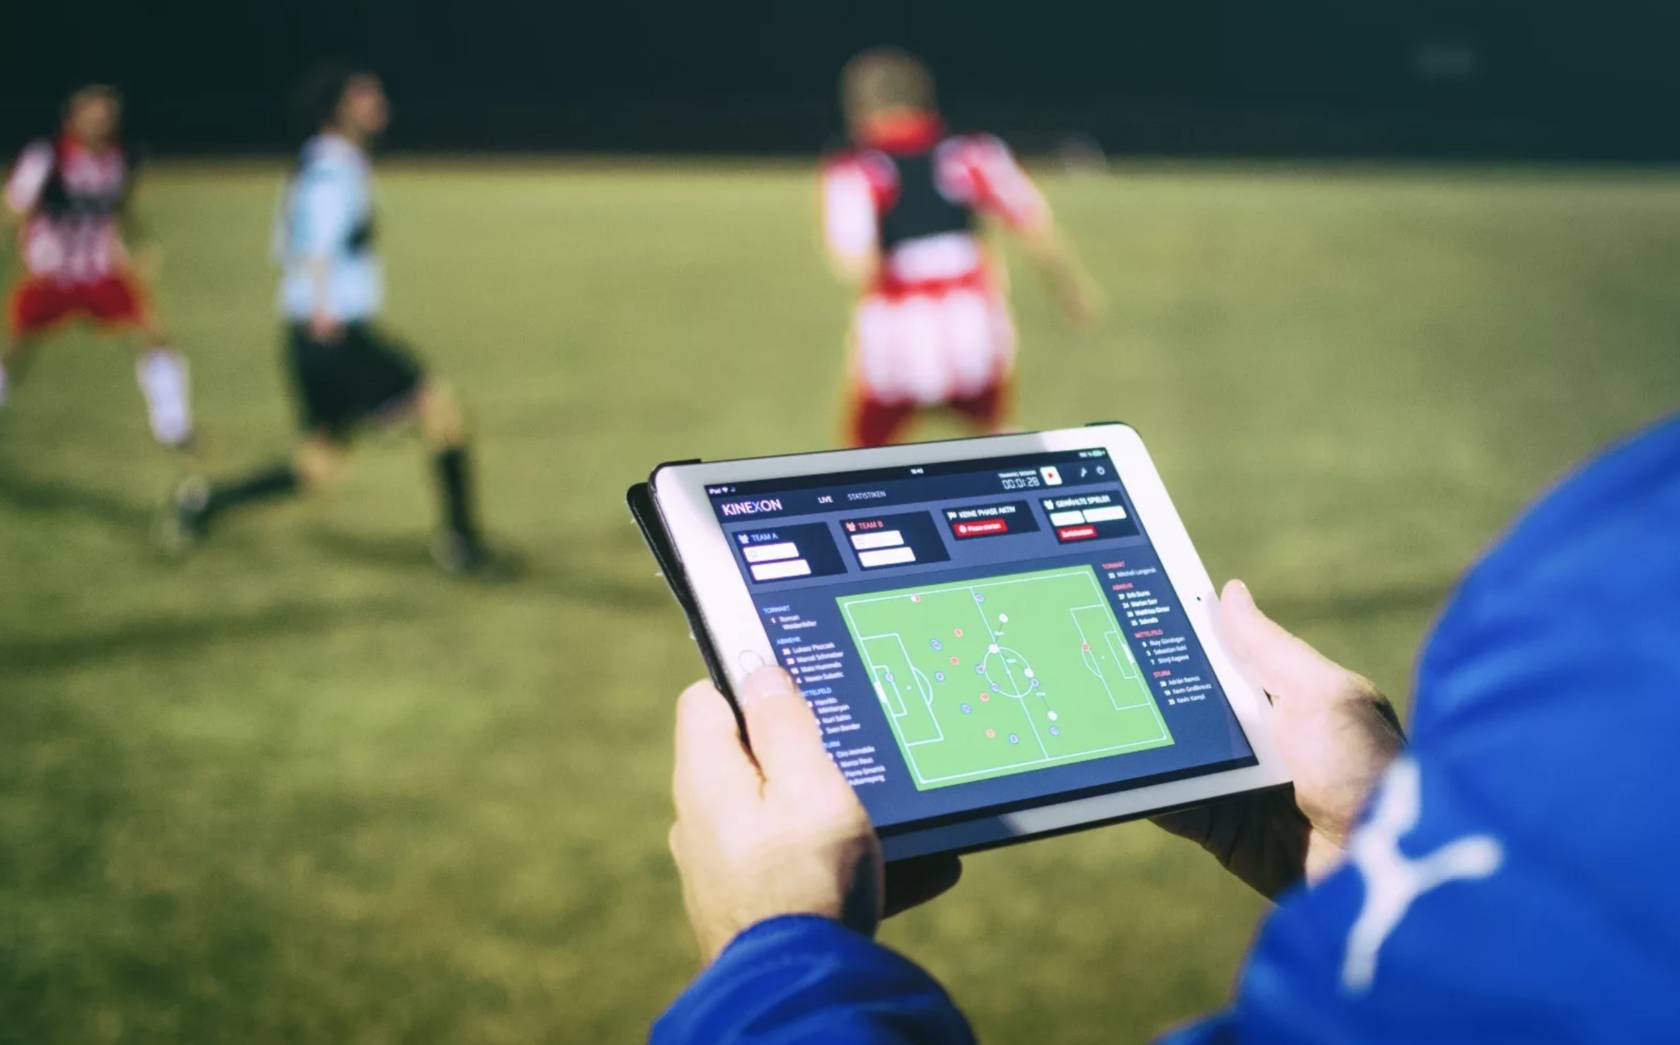 How to play sports. Технологии в футболе. Информационные технологии в футболе. Технологии в спорте. Современные технологии в футболе.